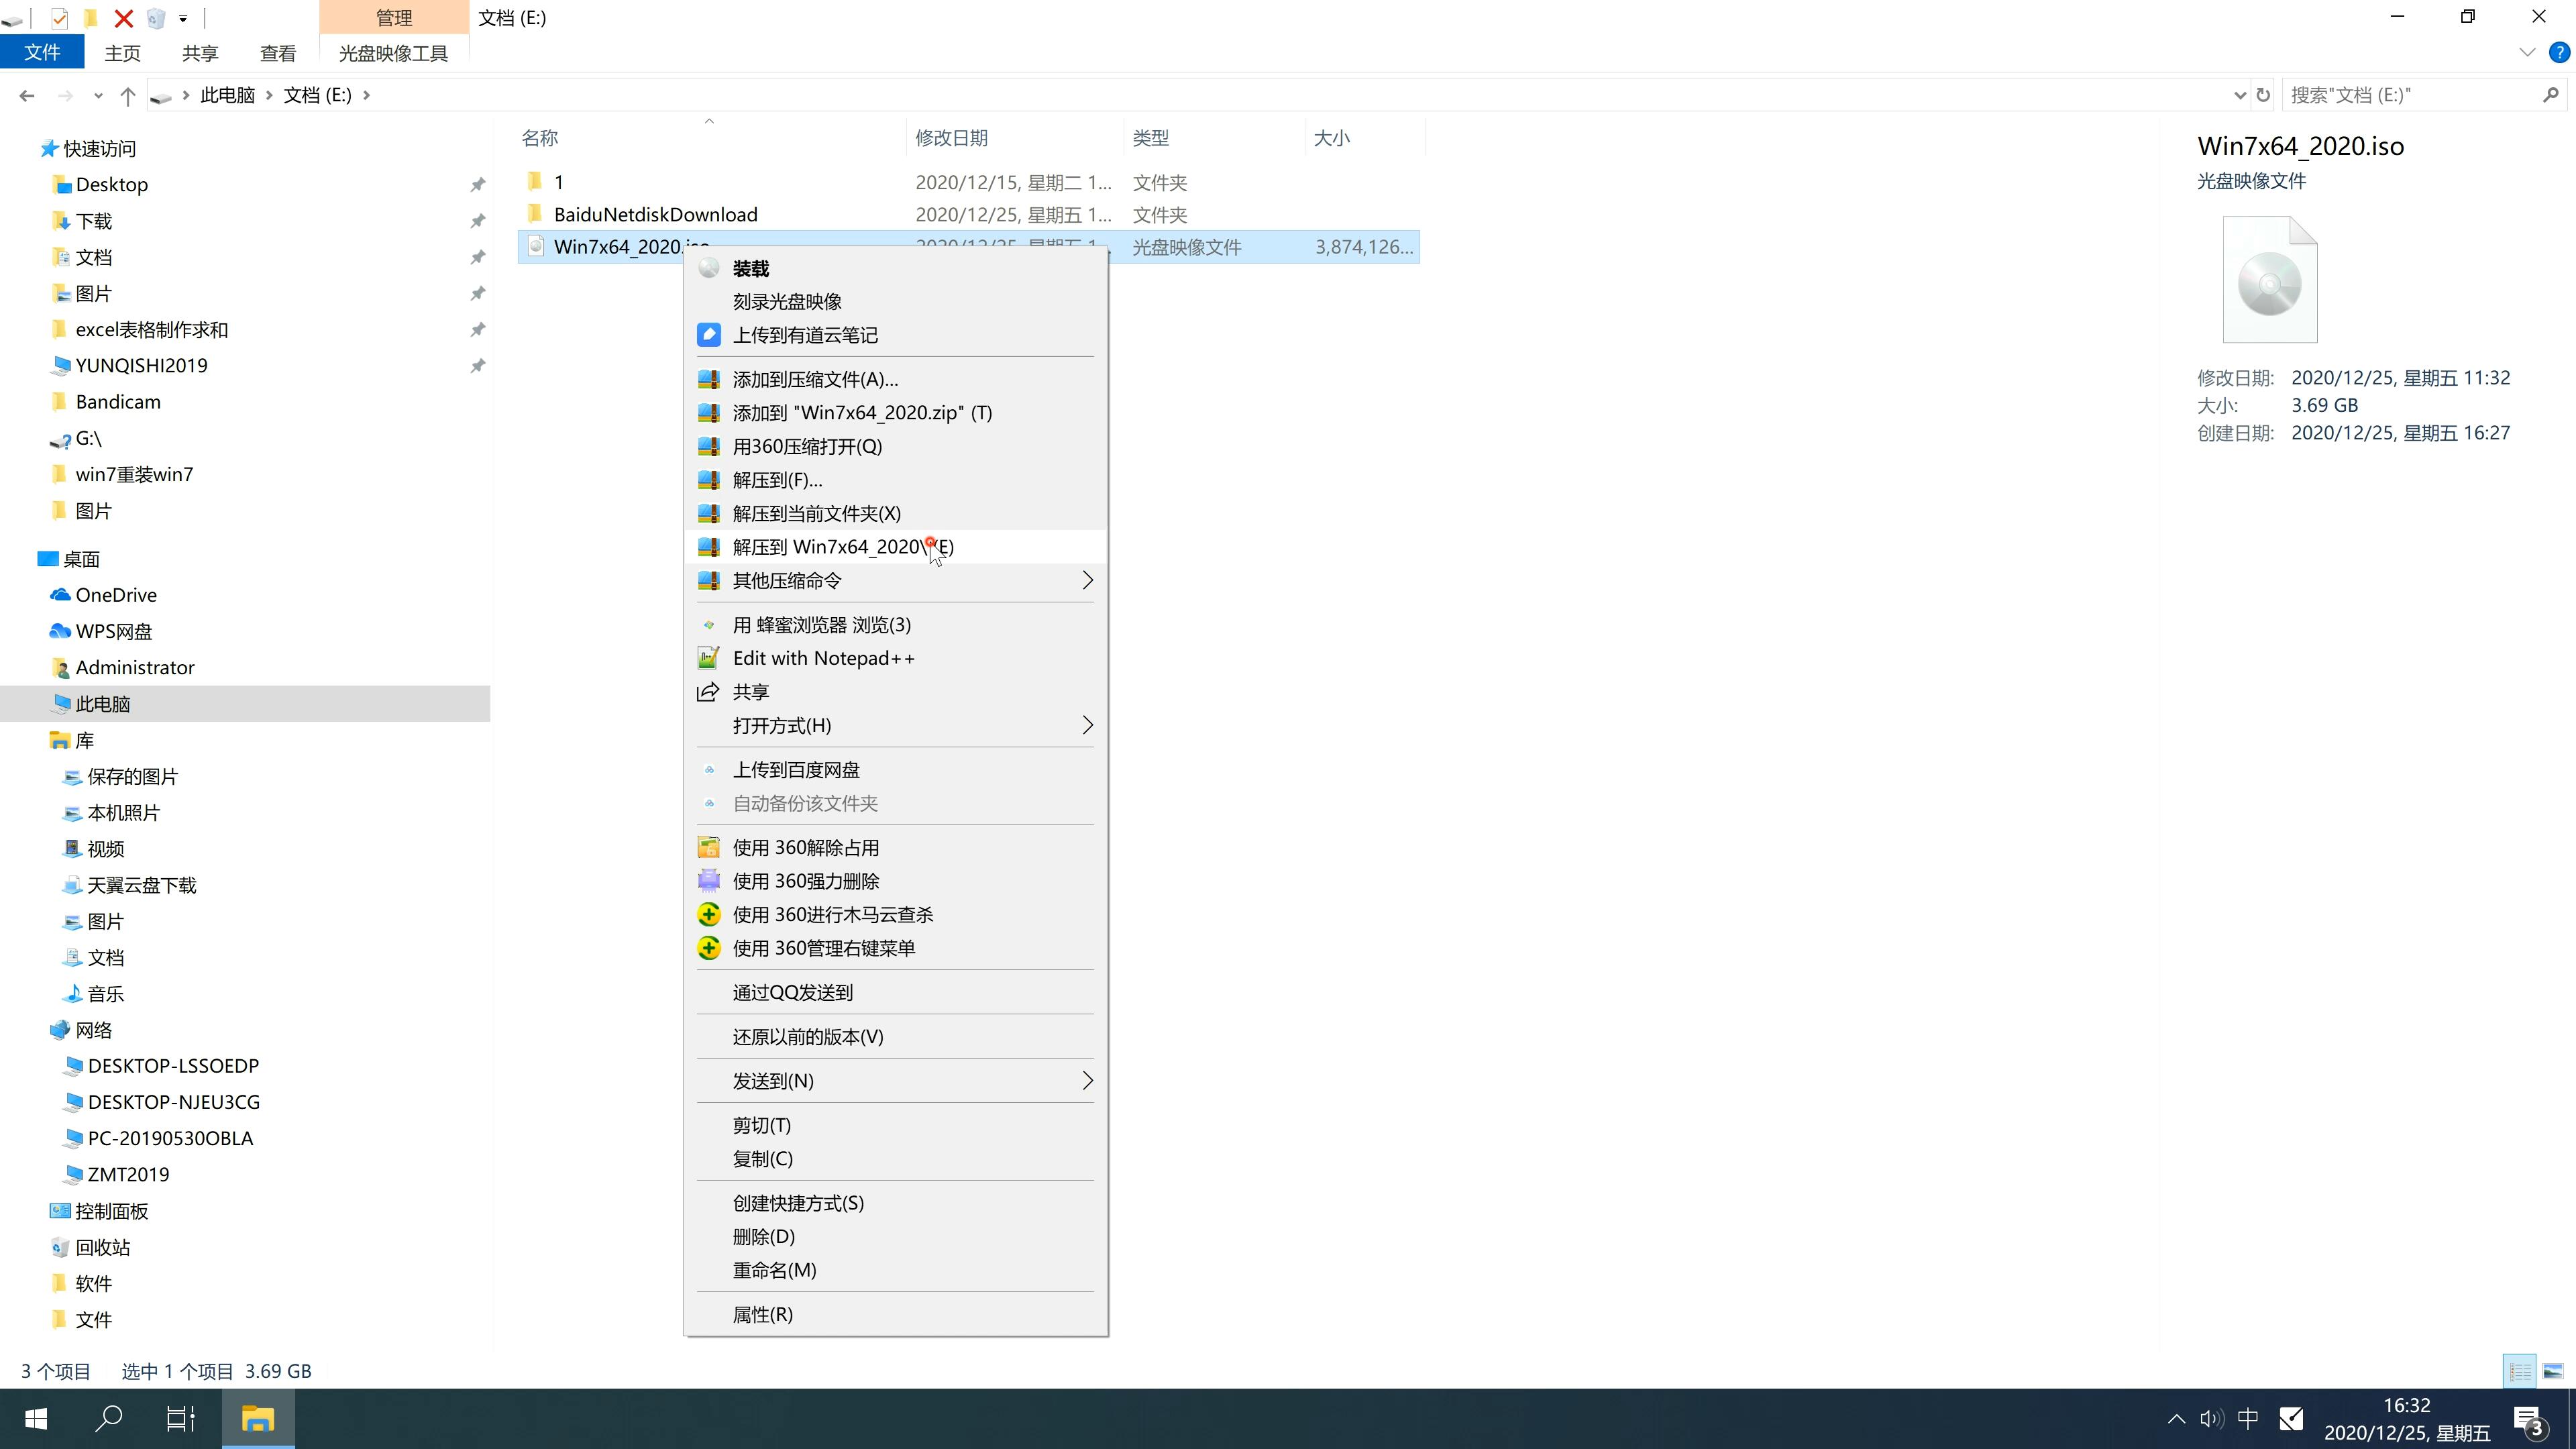 风林火山系统 Ghost Windows10 x64位 SP1 旗舰版镜像免费下载 V2021.01(1)